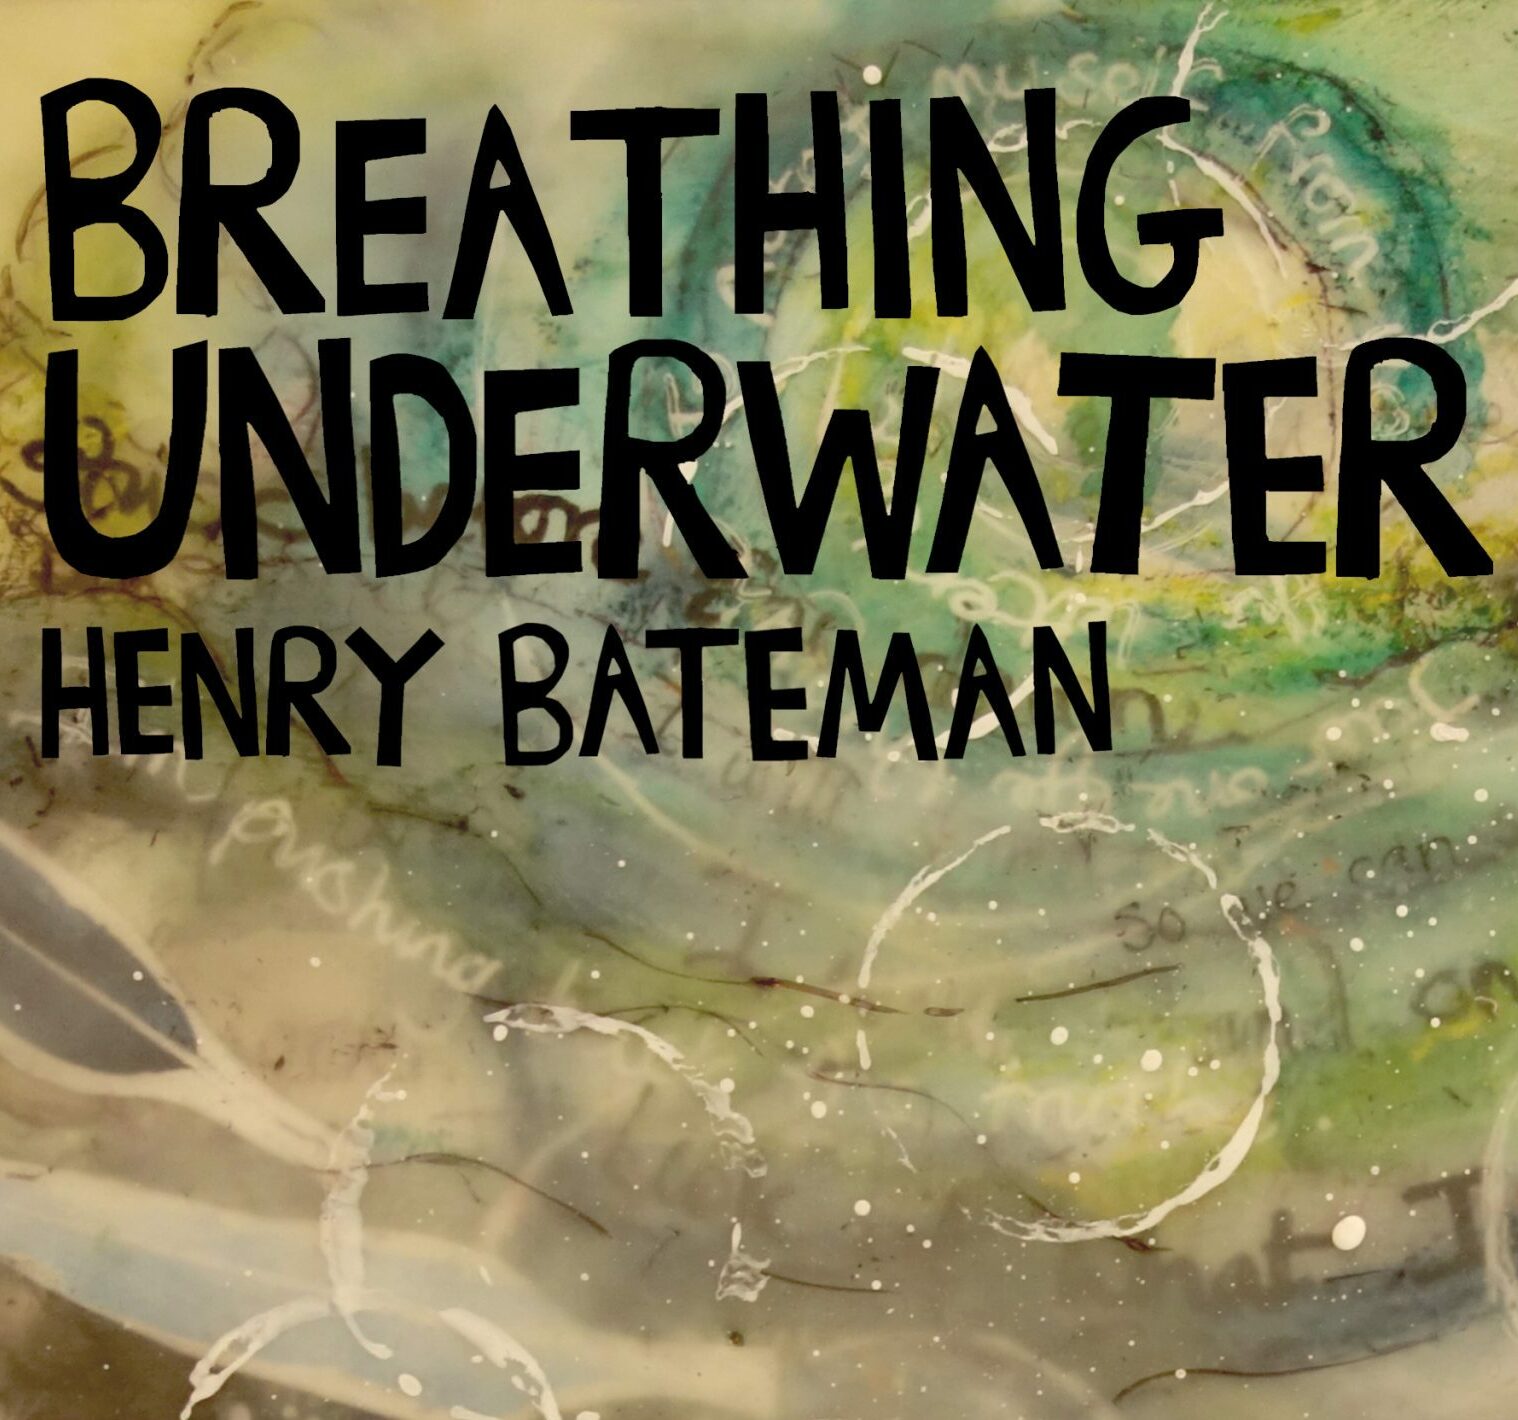 Breathing Underwater Song by Henry Bateman